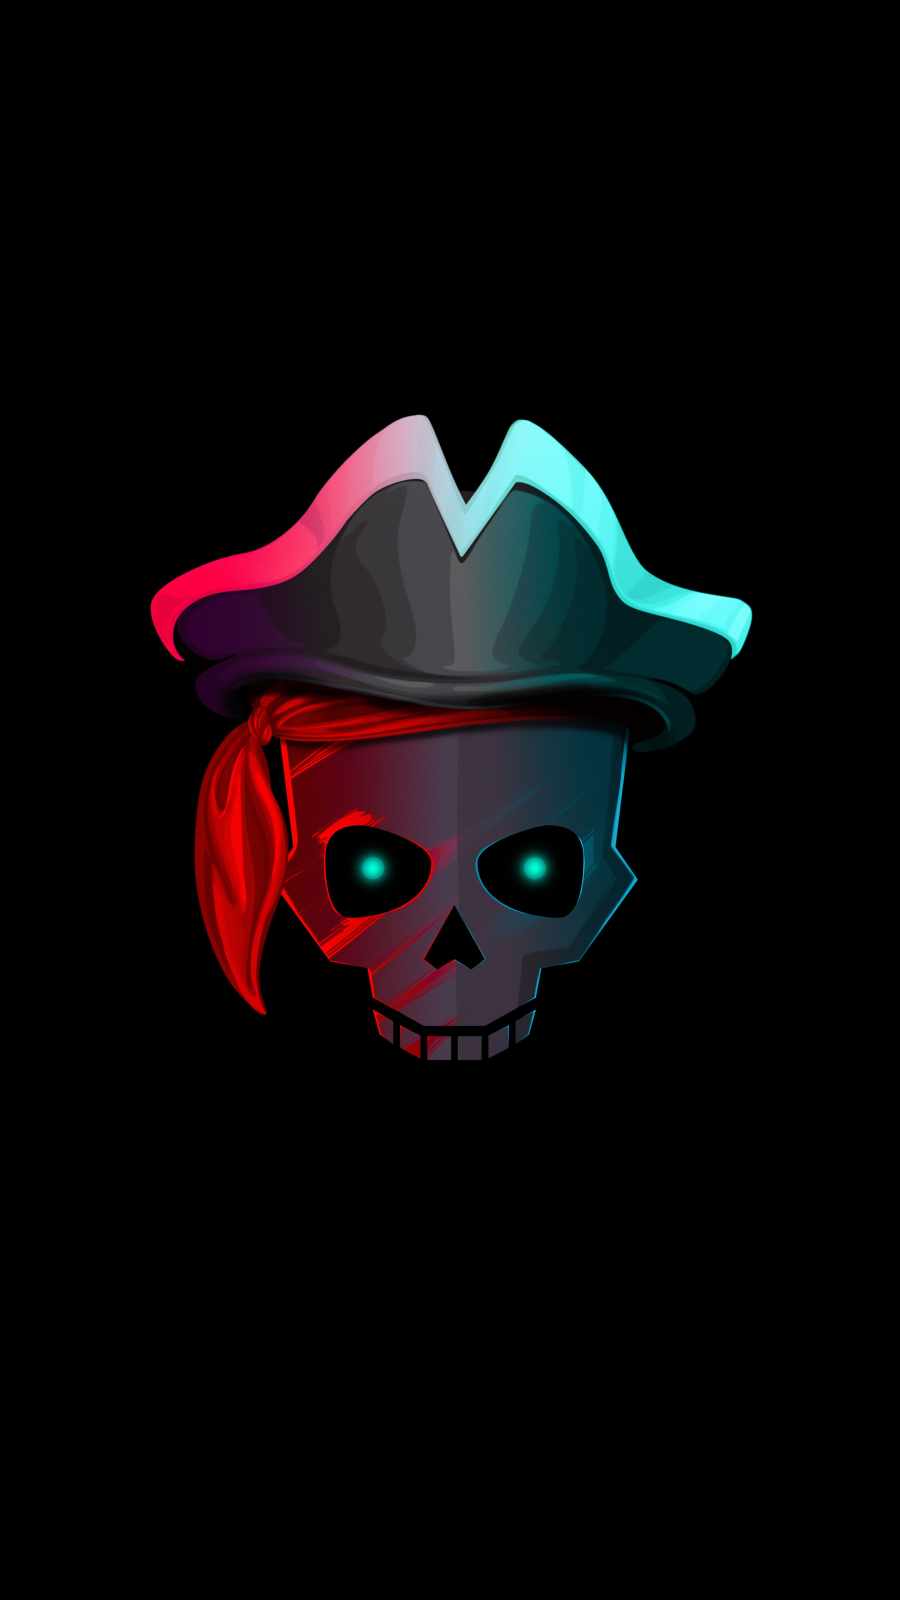 Pirate Skull iPhone Wallpaper